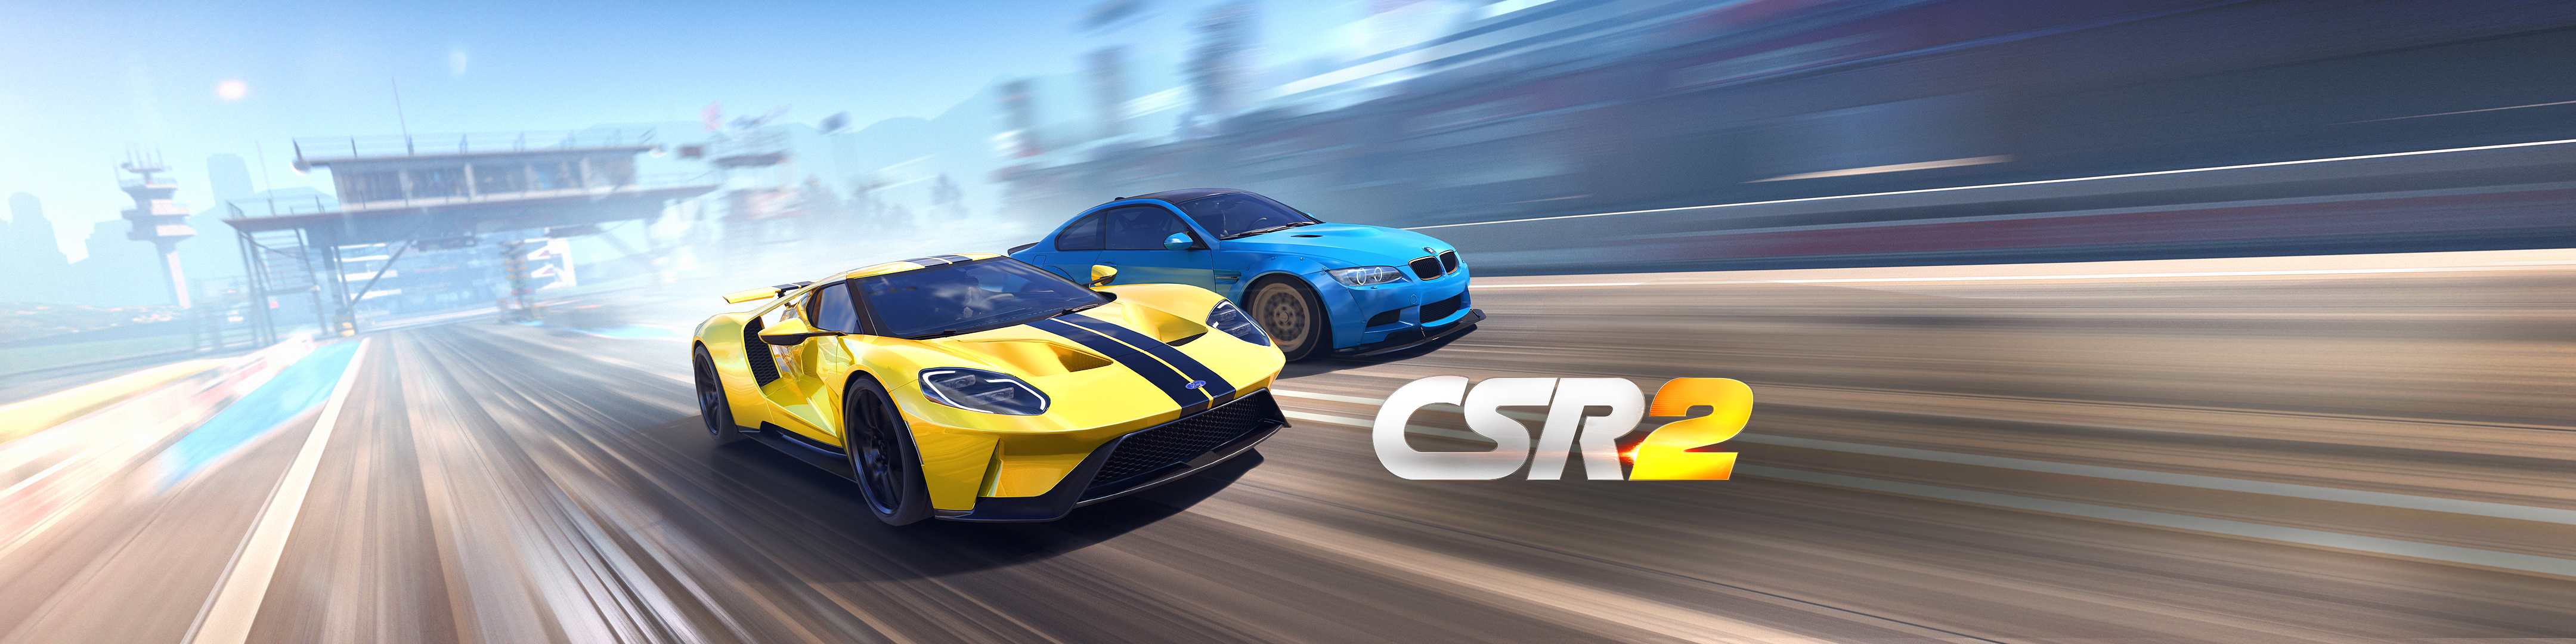 Csr racing 2 download